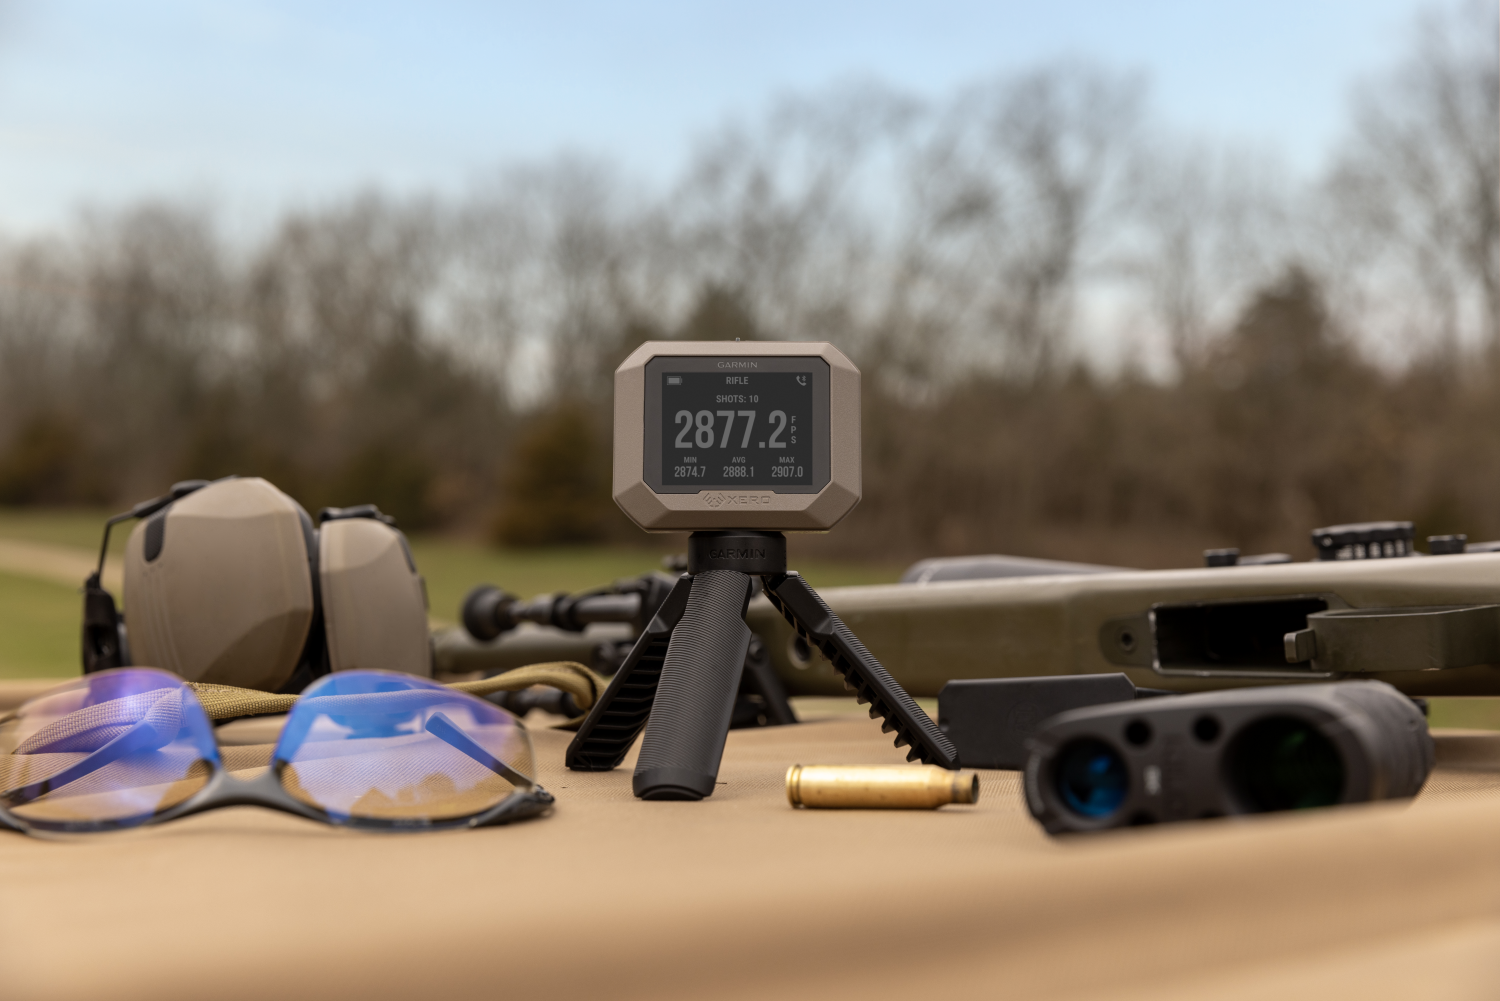 Garmin Xero C1 Pro Chronograph - Applied Ballistics for Suppressed Fire